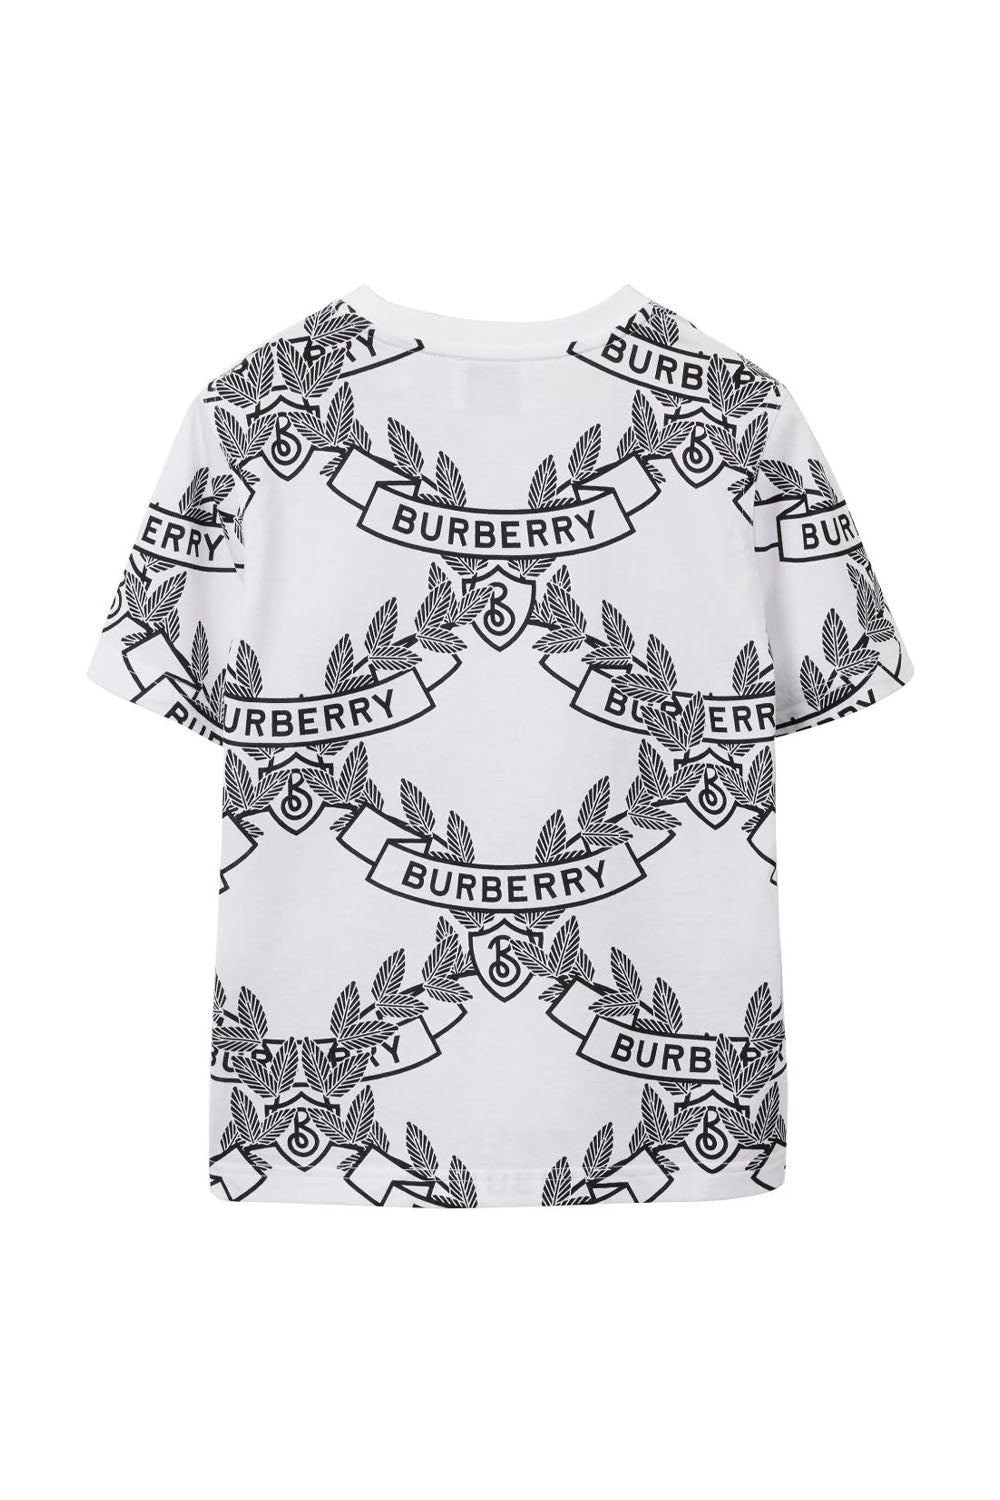 Oak Leaf Crest Cotton T-shirt for Boys - Maison7